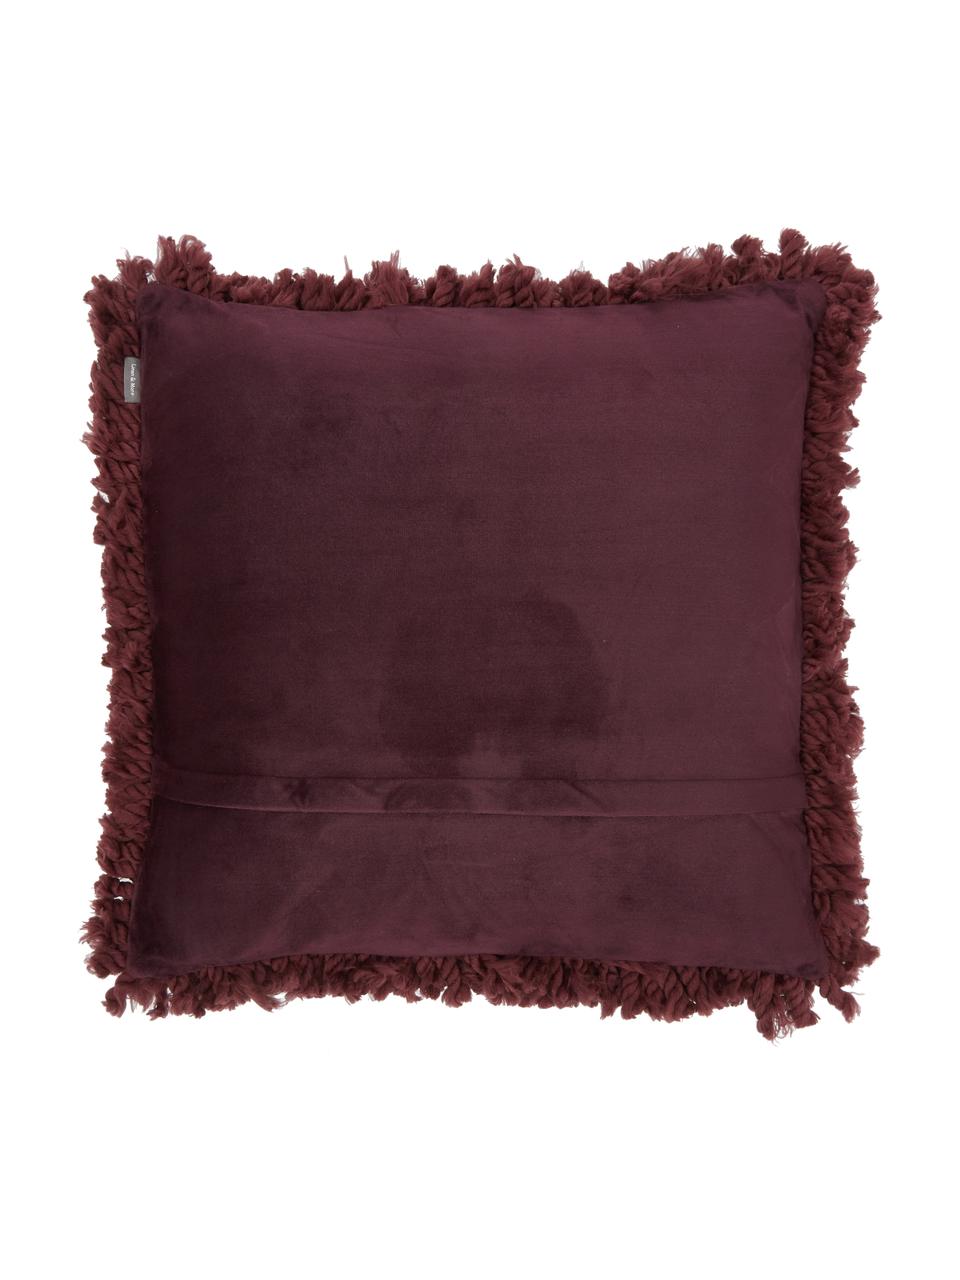 Poduszka z wypełnieniem Oscar, Tapicerka: 95% bawełna, 5% akryl, Burgundowy, S 50 x D 50 cm